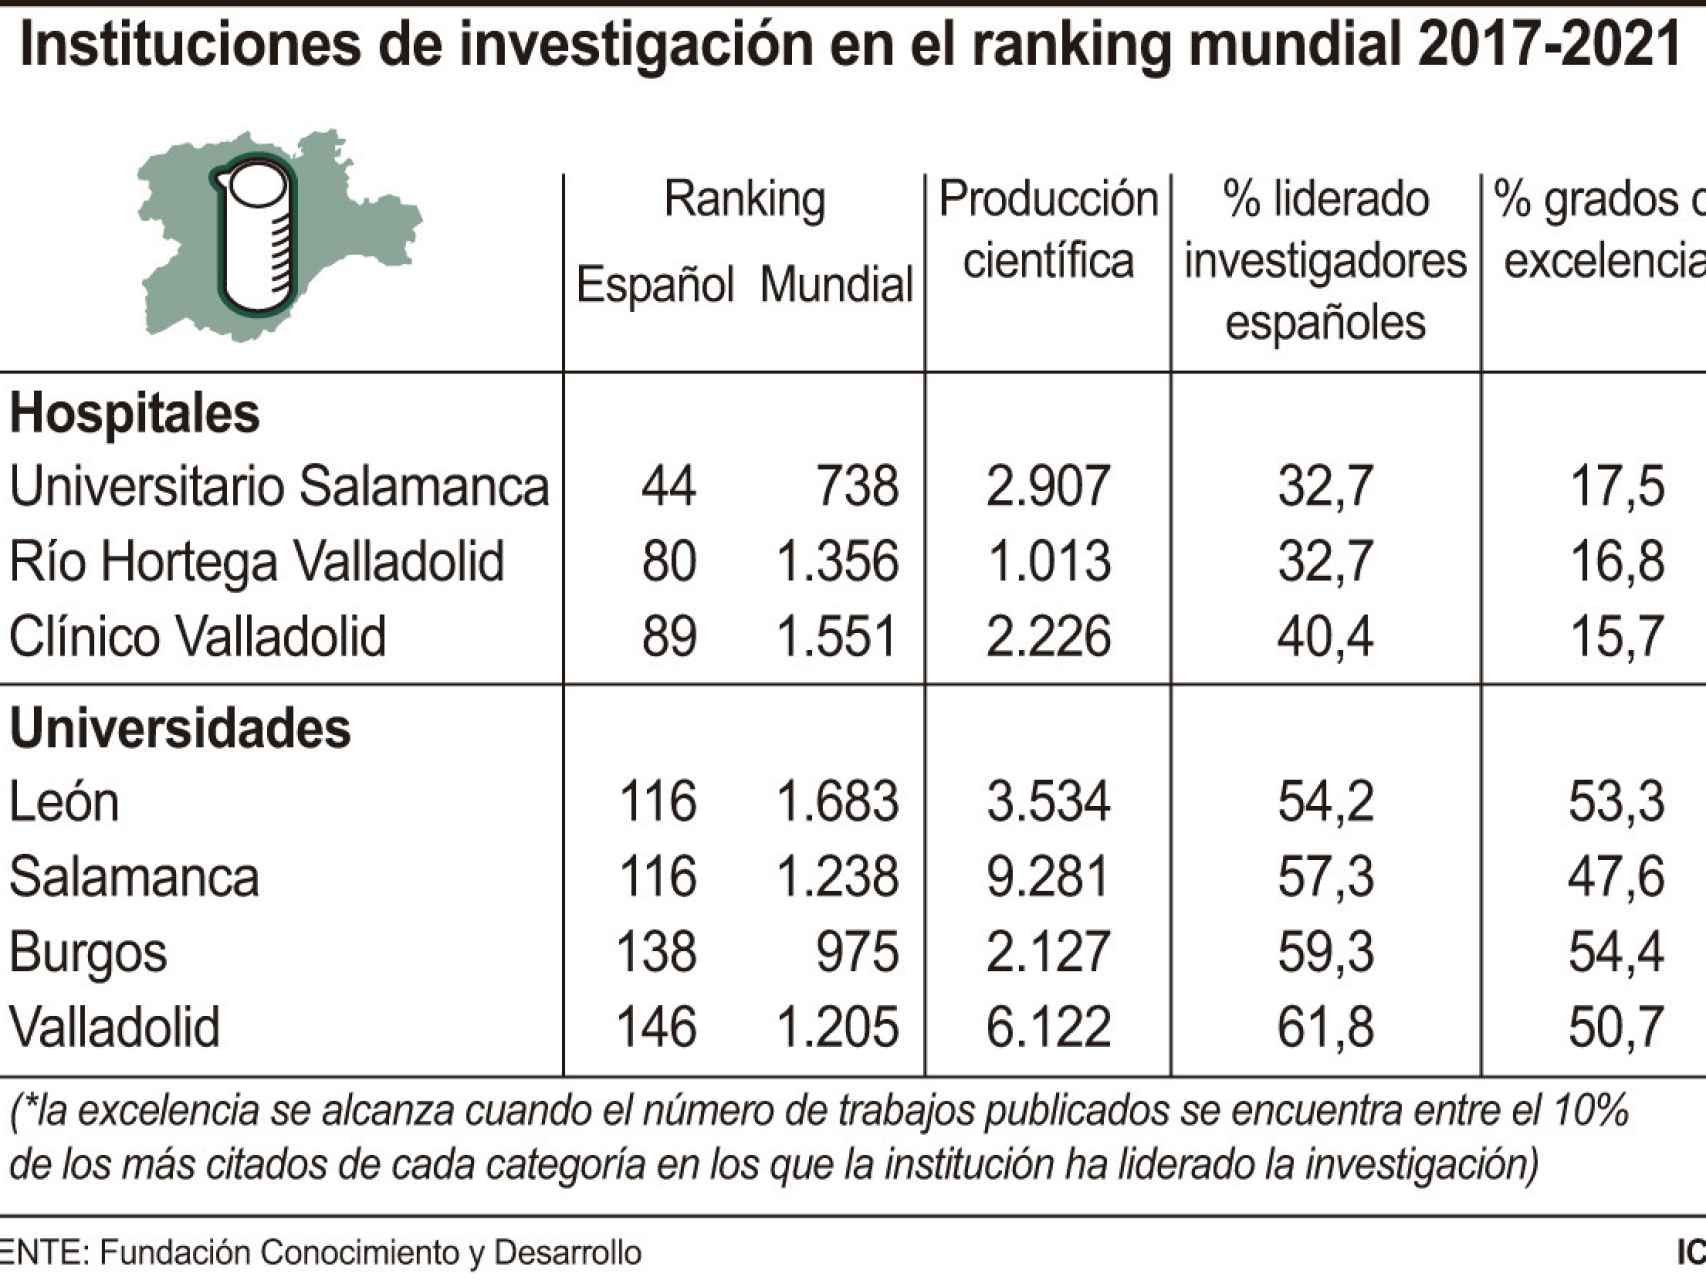 Datos de Hospitales de Castilla y León